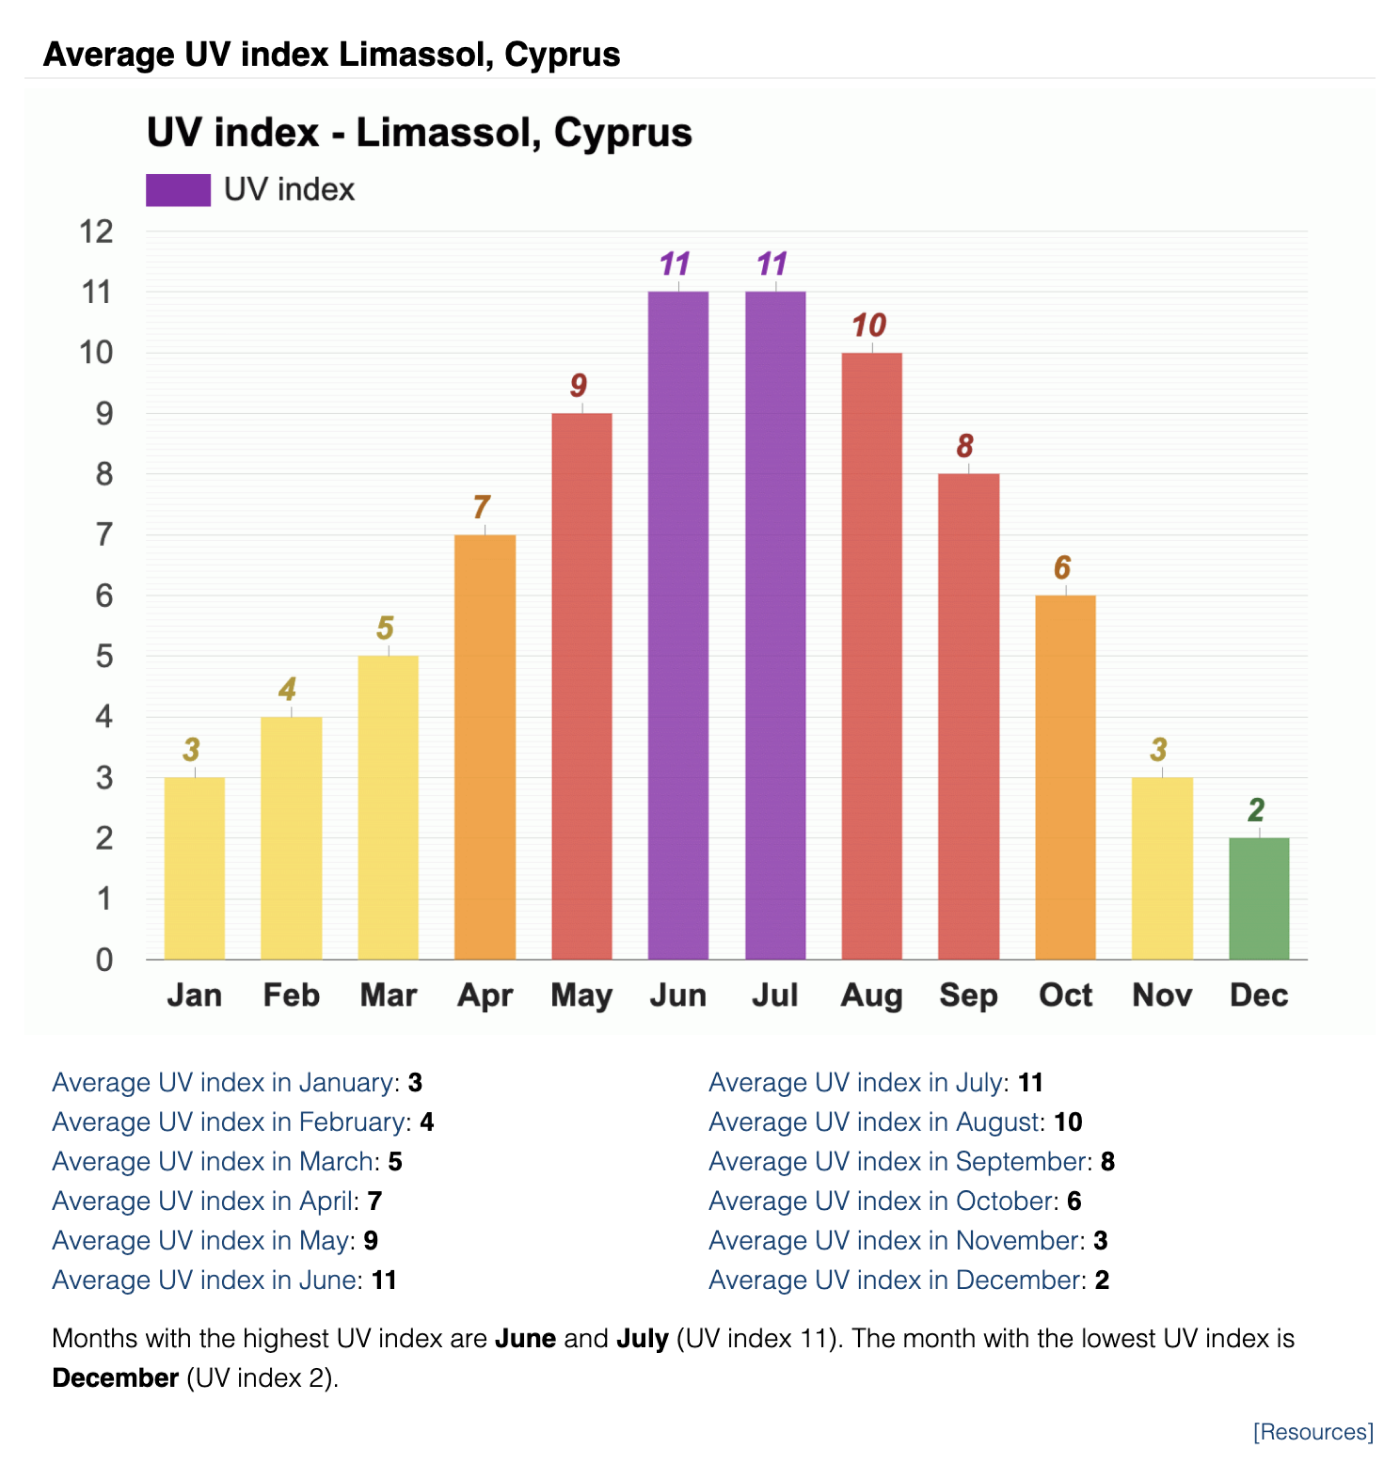 С февраля по октябрь на Кипре высокие значения индекса ультрафиолетового излучения — от 4 до 11. ВОЗ рекомендует защищаться от солнца при индексе 3 и выше. Источник: weather-atlas.com